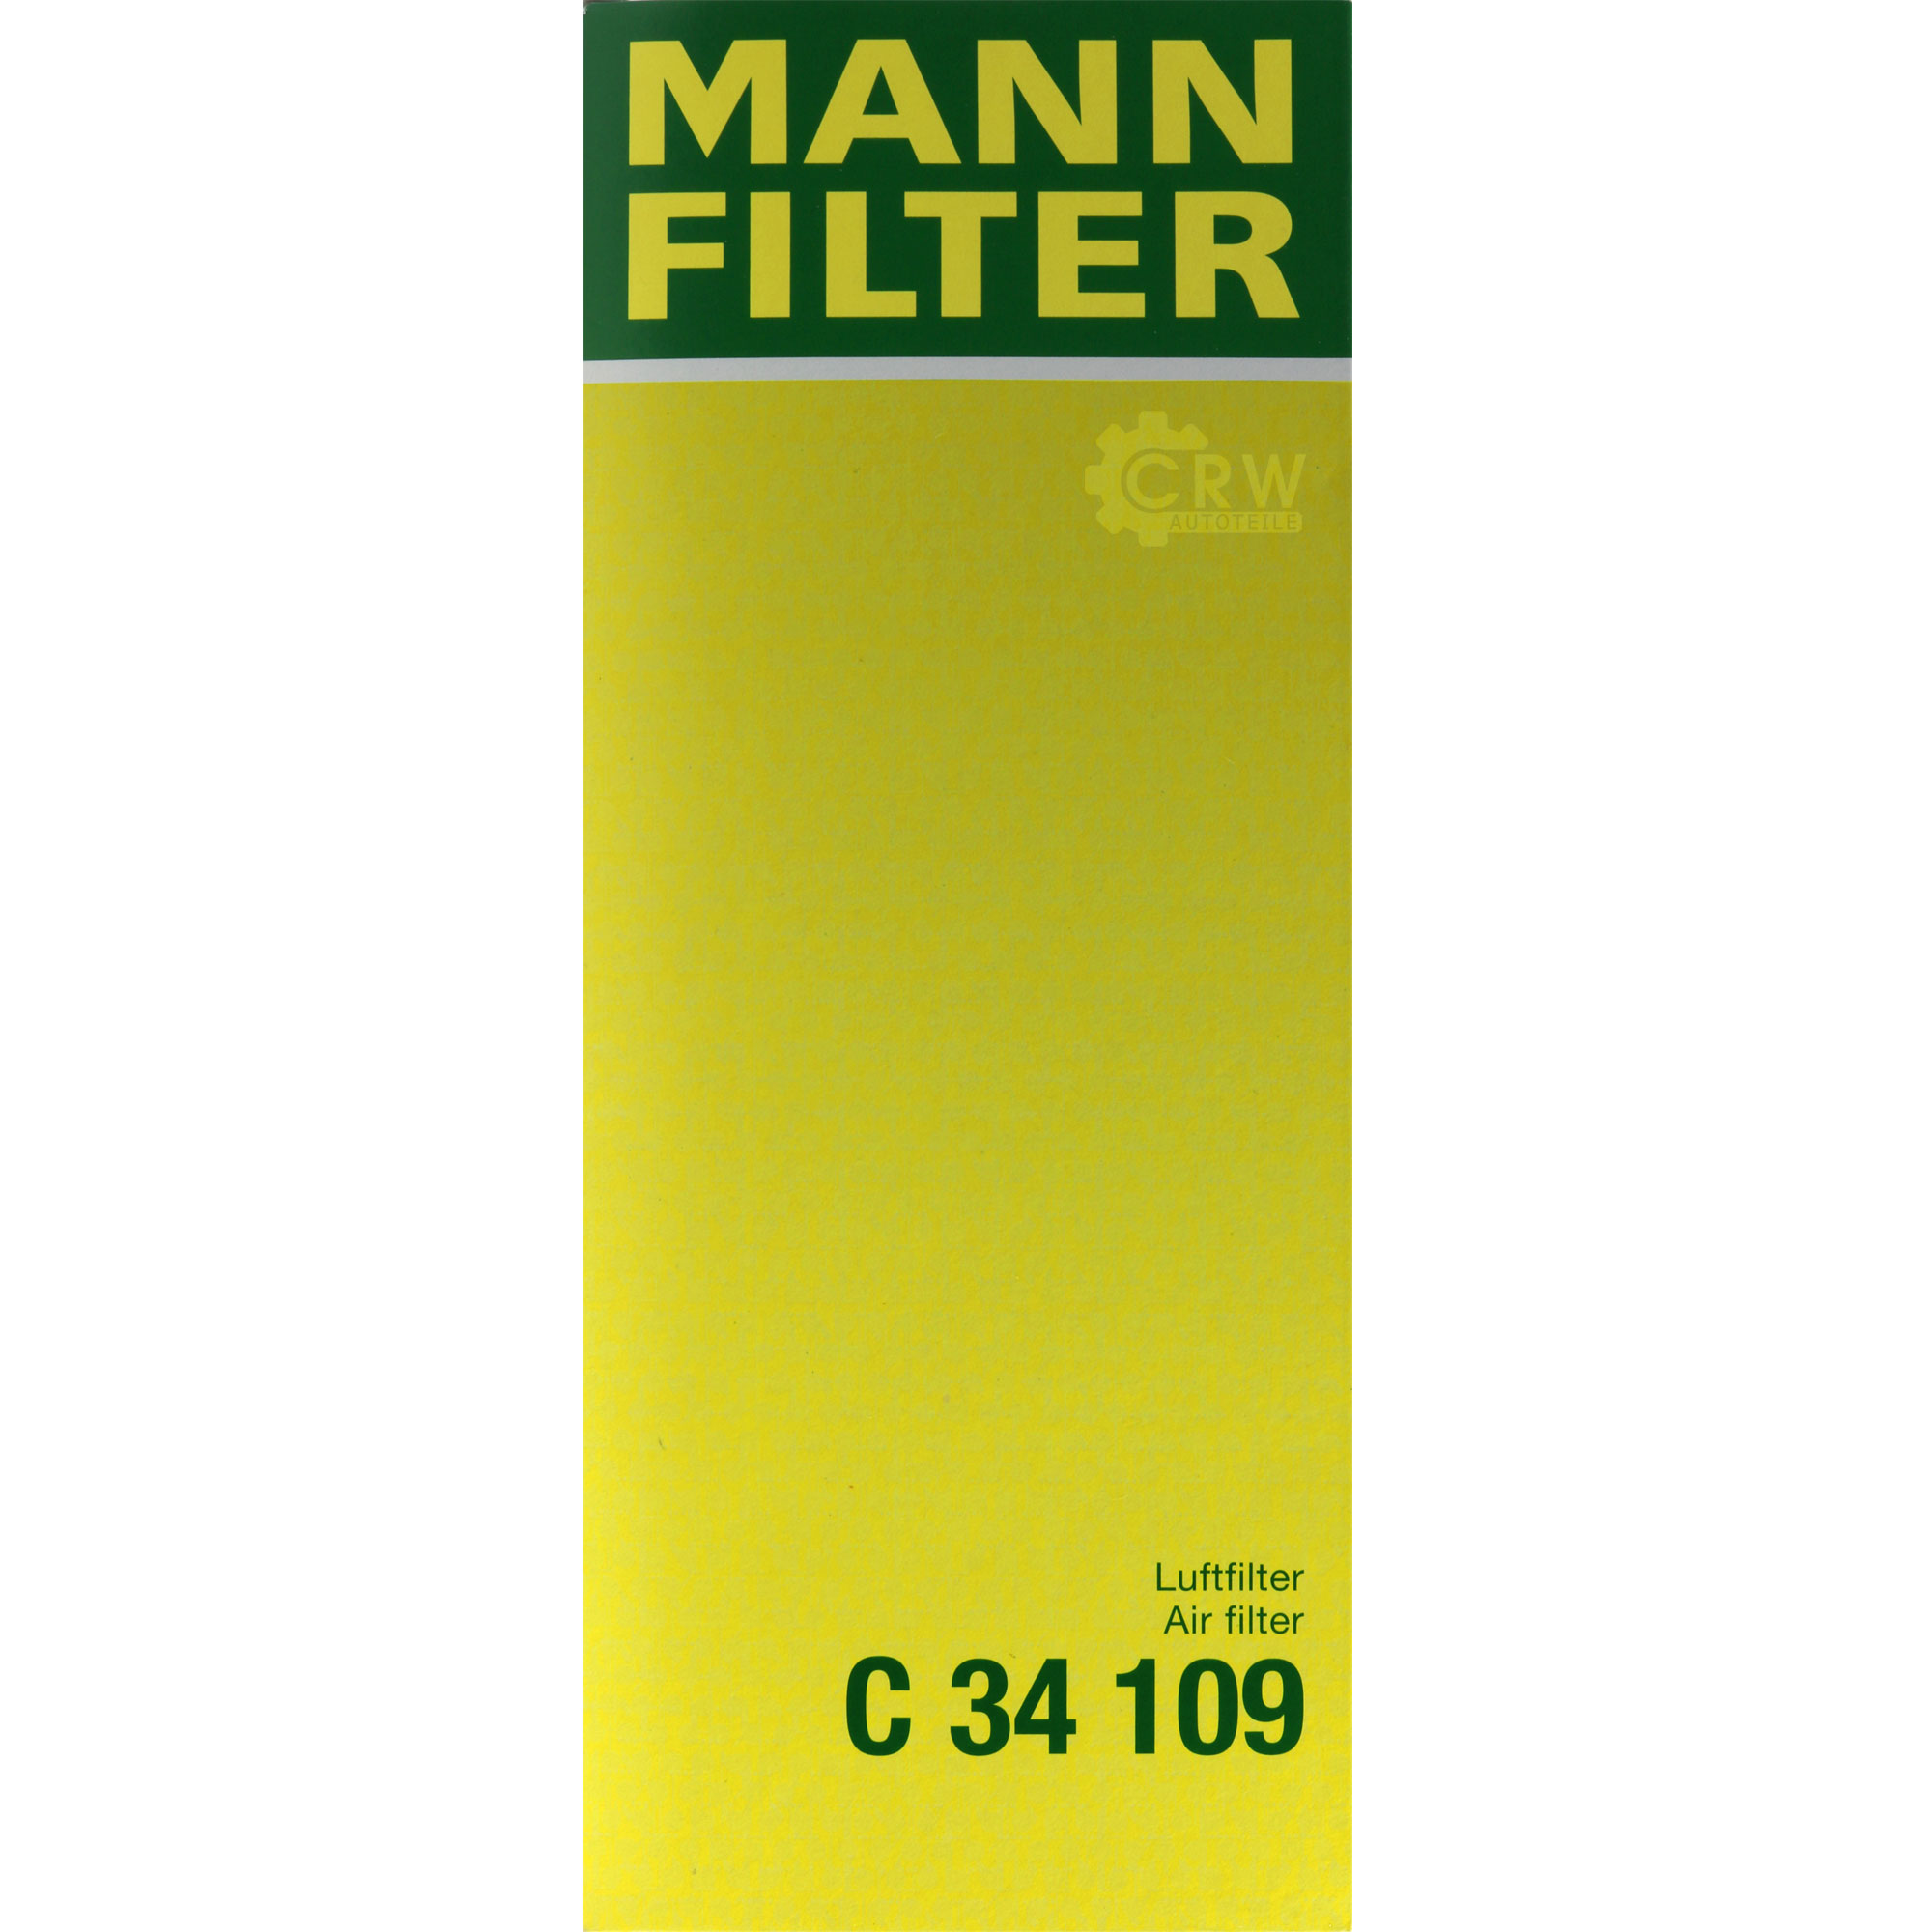 MANN-FILTER Luftfilter für Audi 80 89 89Q 8A B3 1.8 S 2.0 8C B4 2.3 E